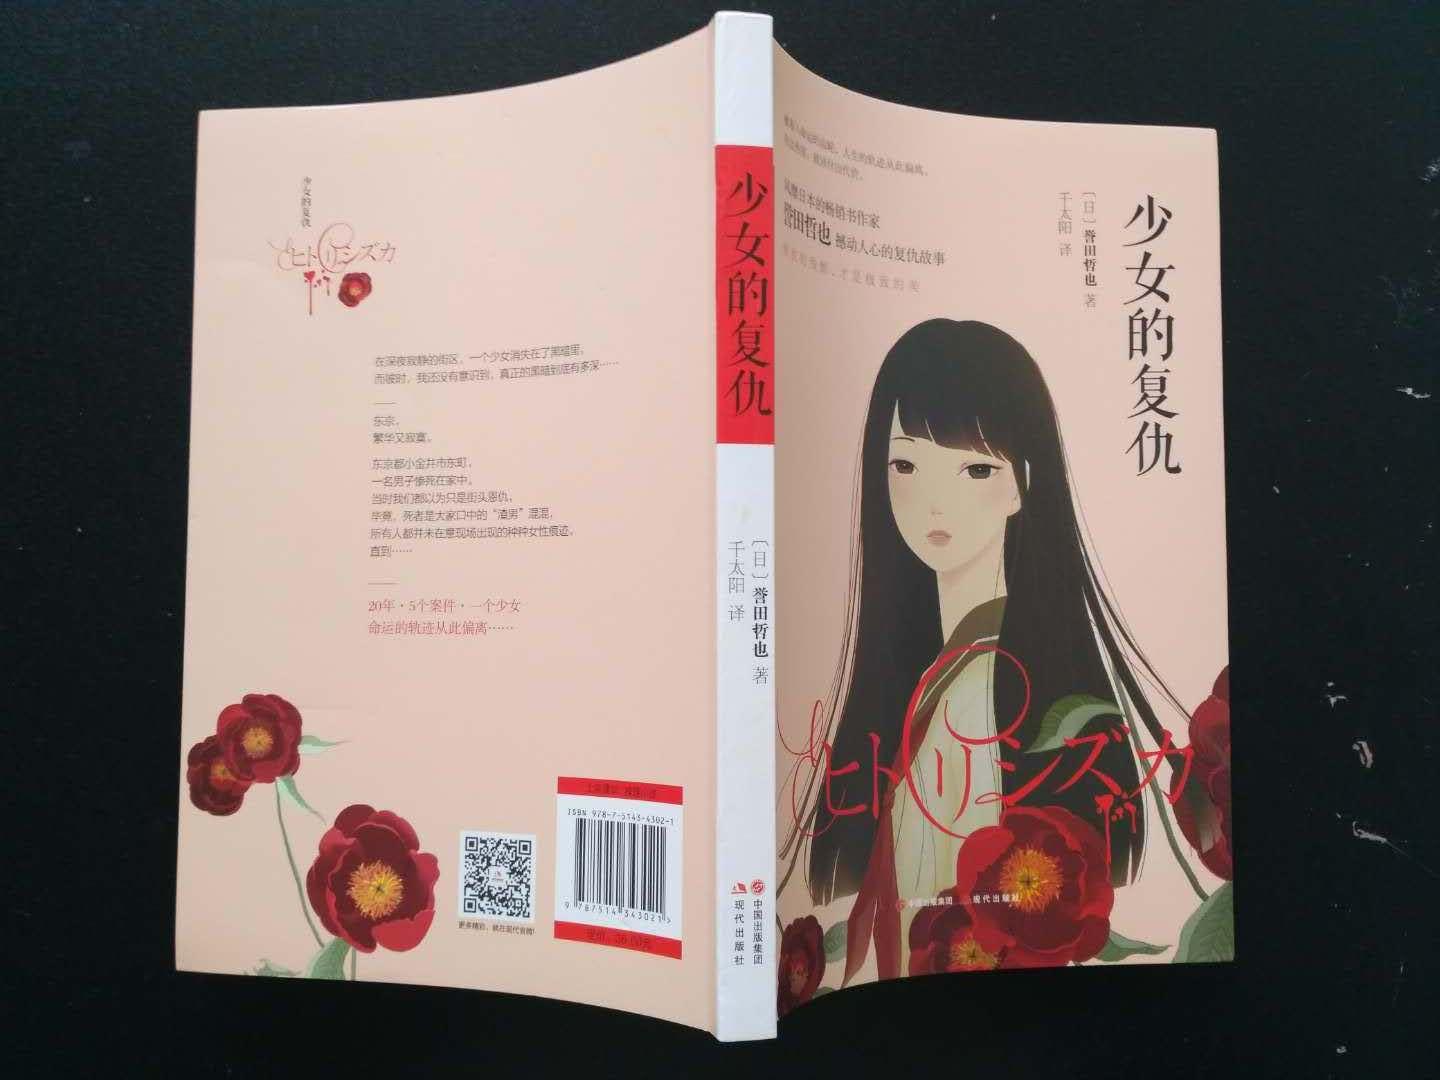 《少女的复仇》是日本推理名家誉田哲也的大作，是警部补姬川玲子系列的开篇之作，在国内以前的译名是《独静加》，其实就是这本书，只是改个名字而已。《少女的复仇》新的排版和设计都很好，书名和封面也很贴切，是部很好的推理小说。